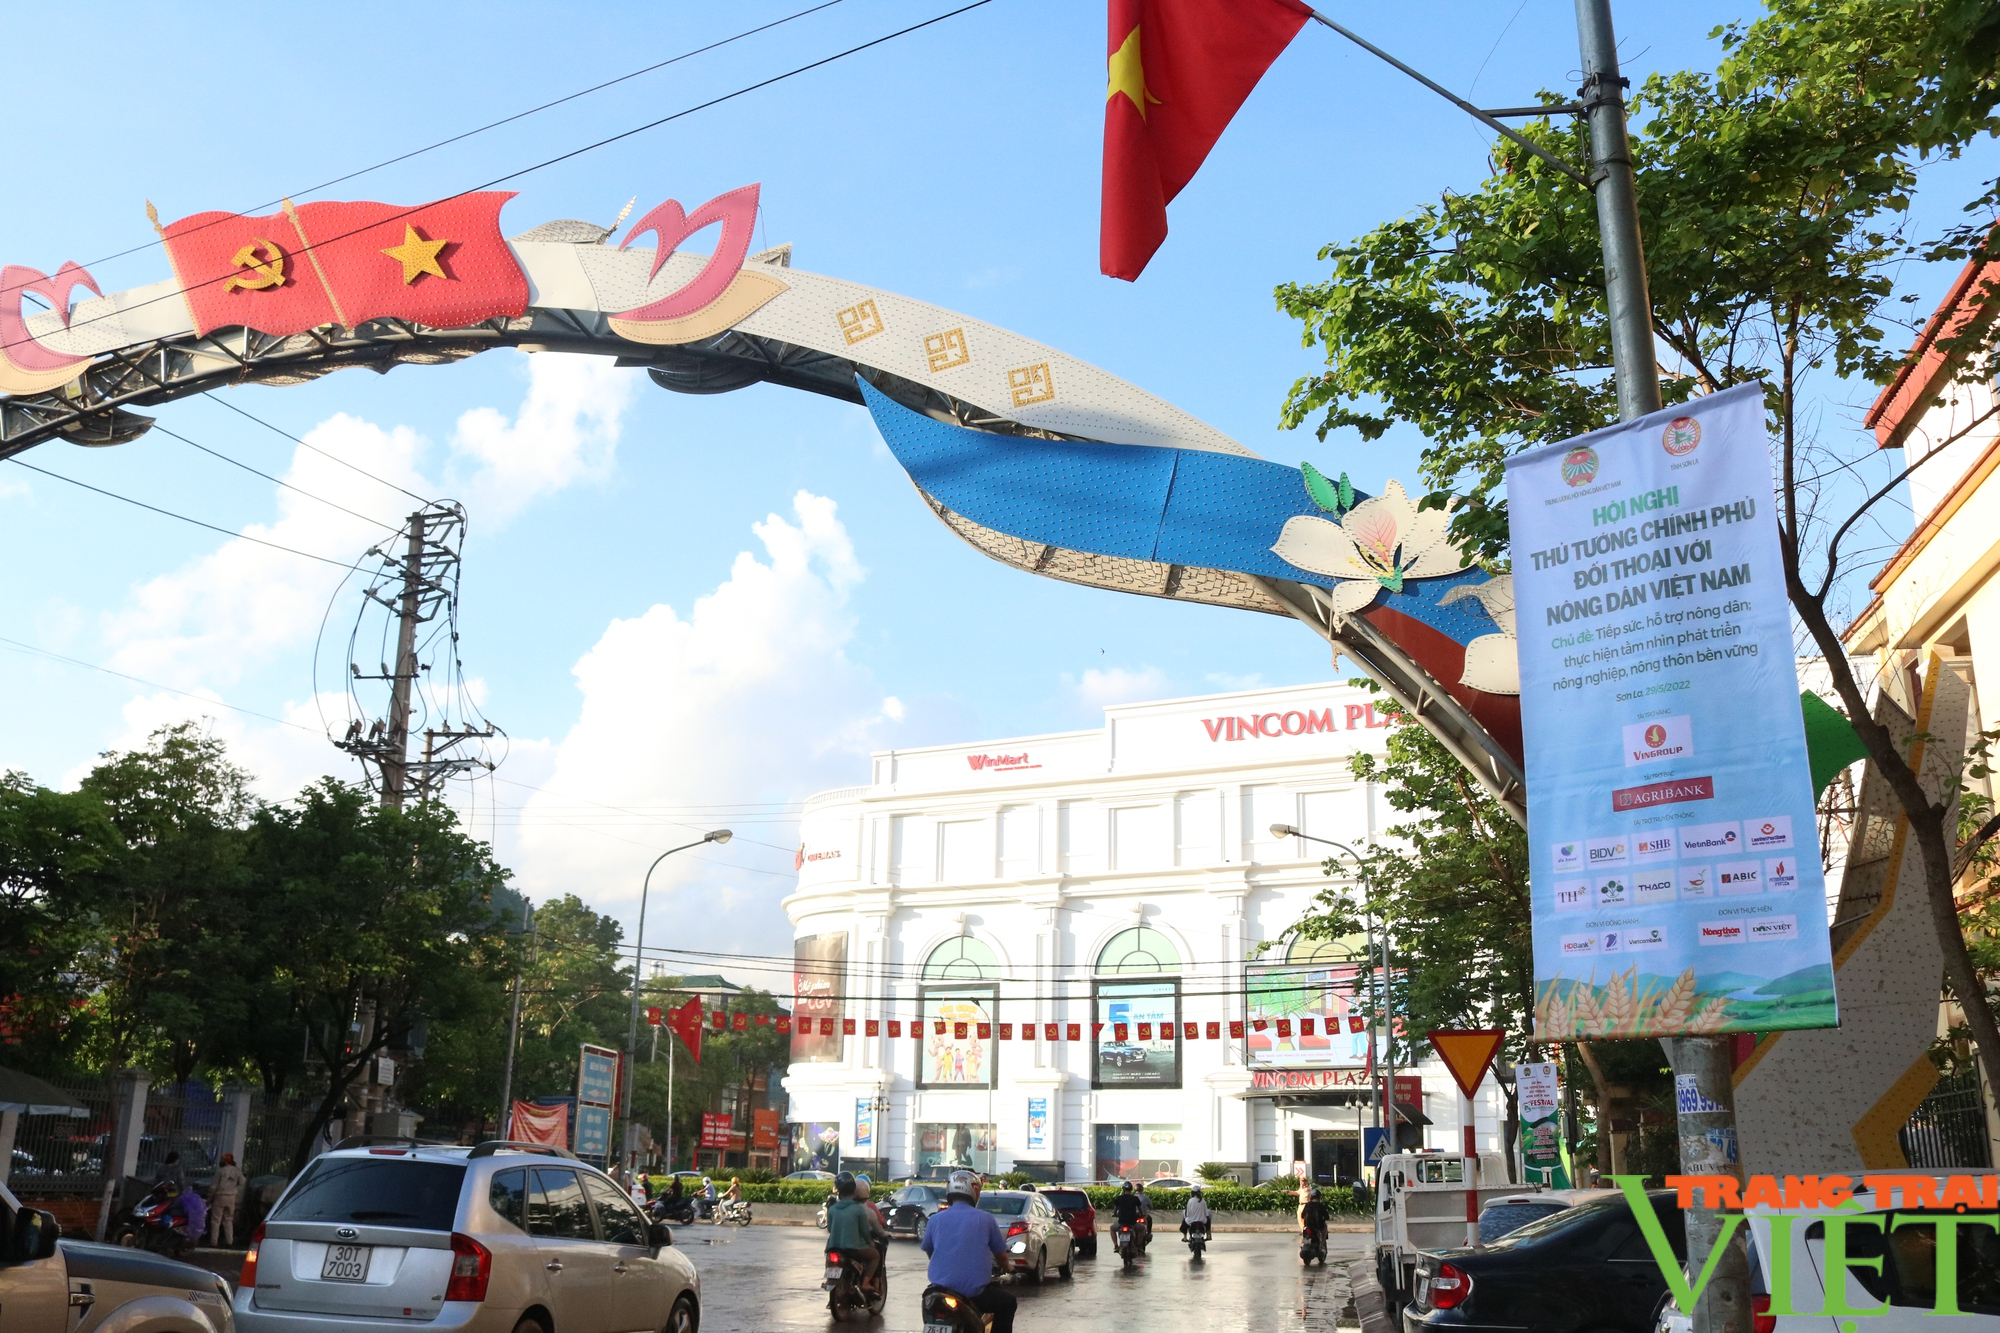 Chuẩn bị chu đáo chuỗi sự kiện kiện Hội nghị Thủ tướng Chính phủ đối thoại với nông dân Việt Nam tại tỉnh Sơn La - Ảnh 6.